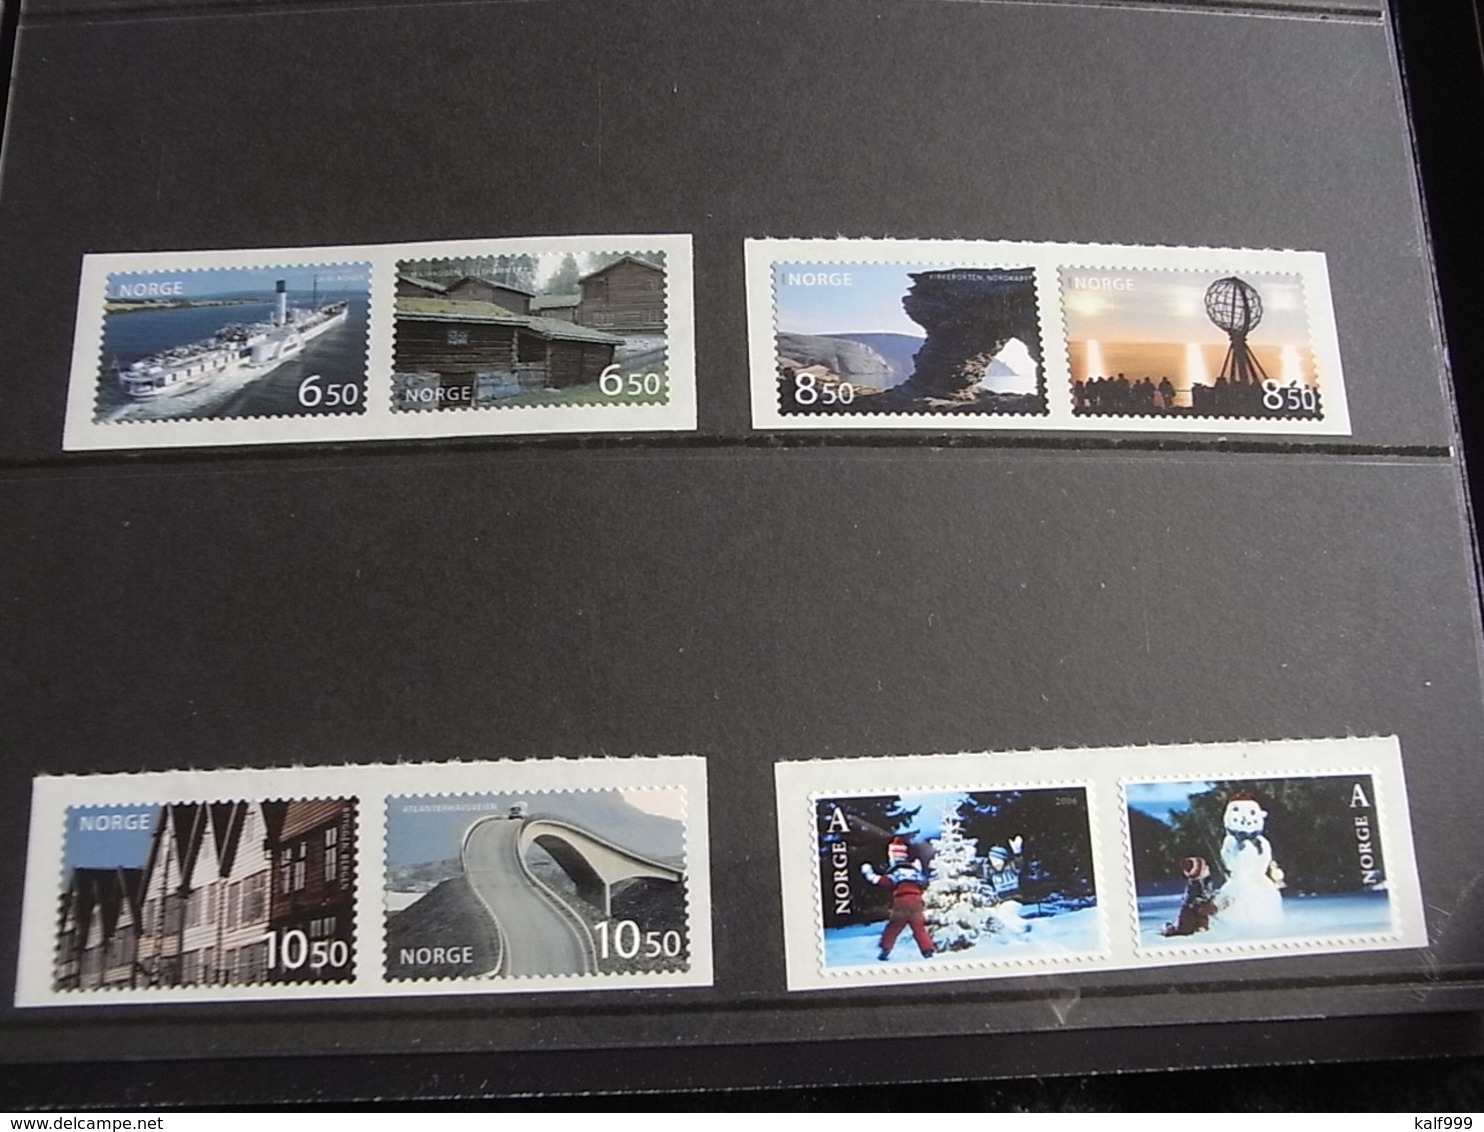 ~~~ Norway Norvege Noorwegen 2006 - Official Year Book Postage Stamps -  ** MNH  ~~~